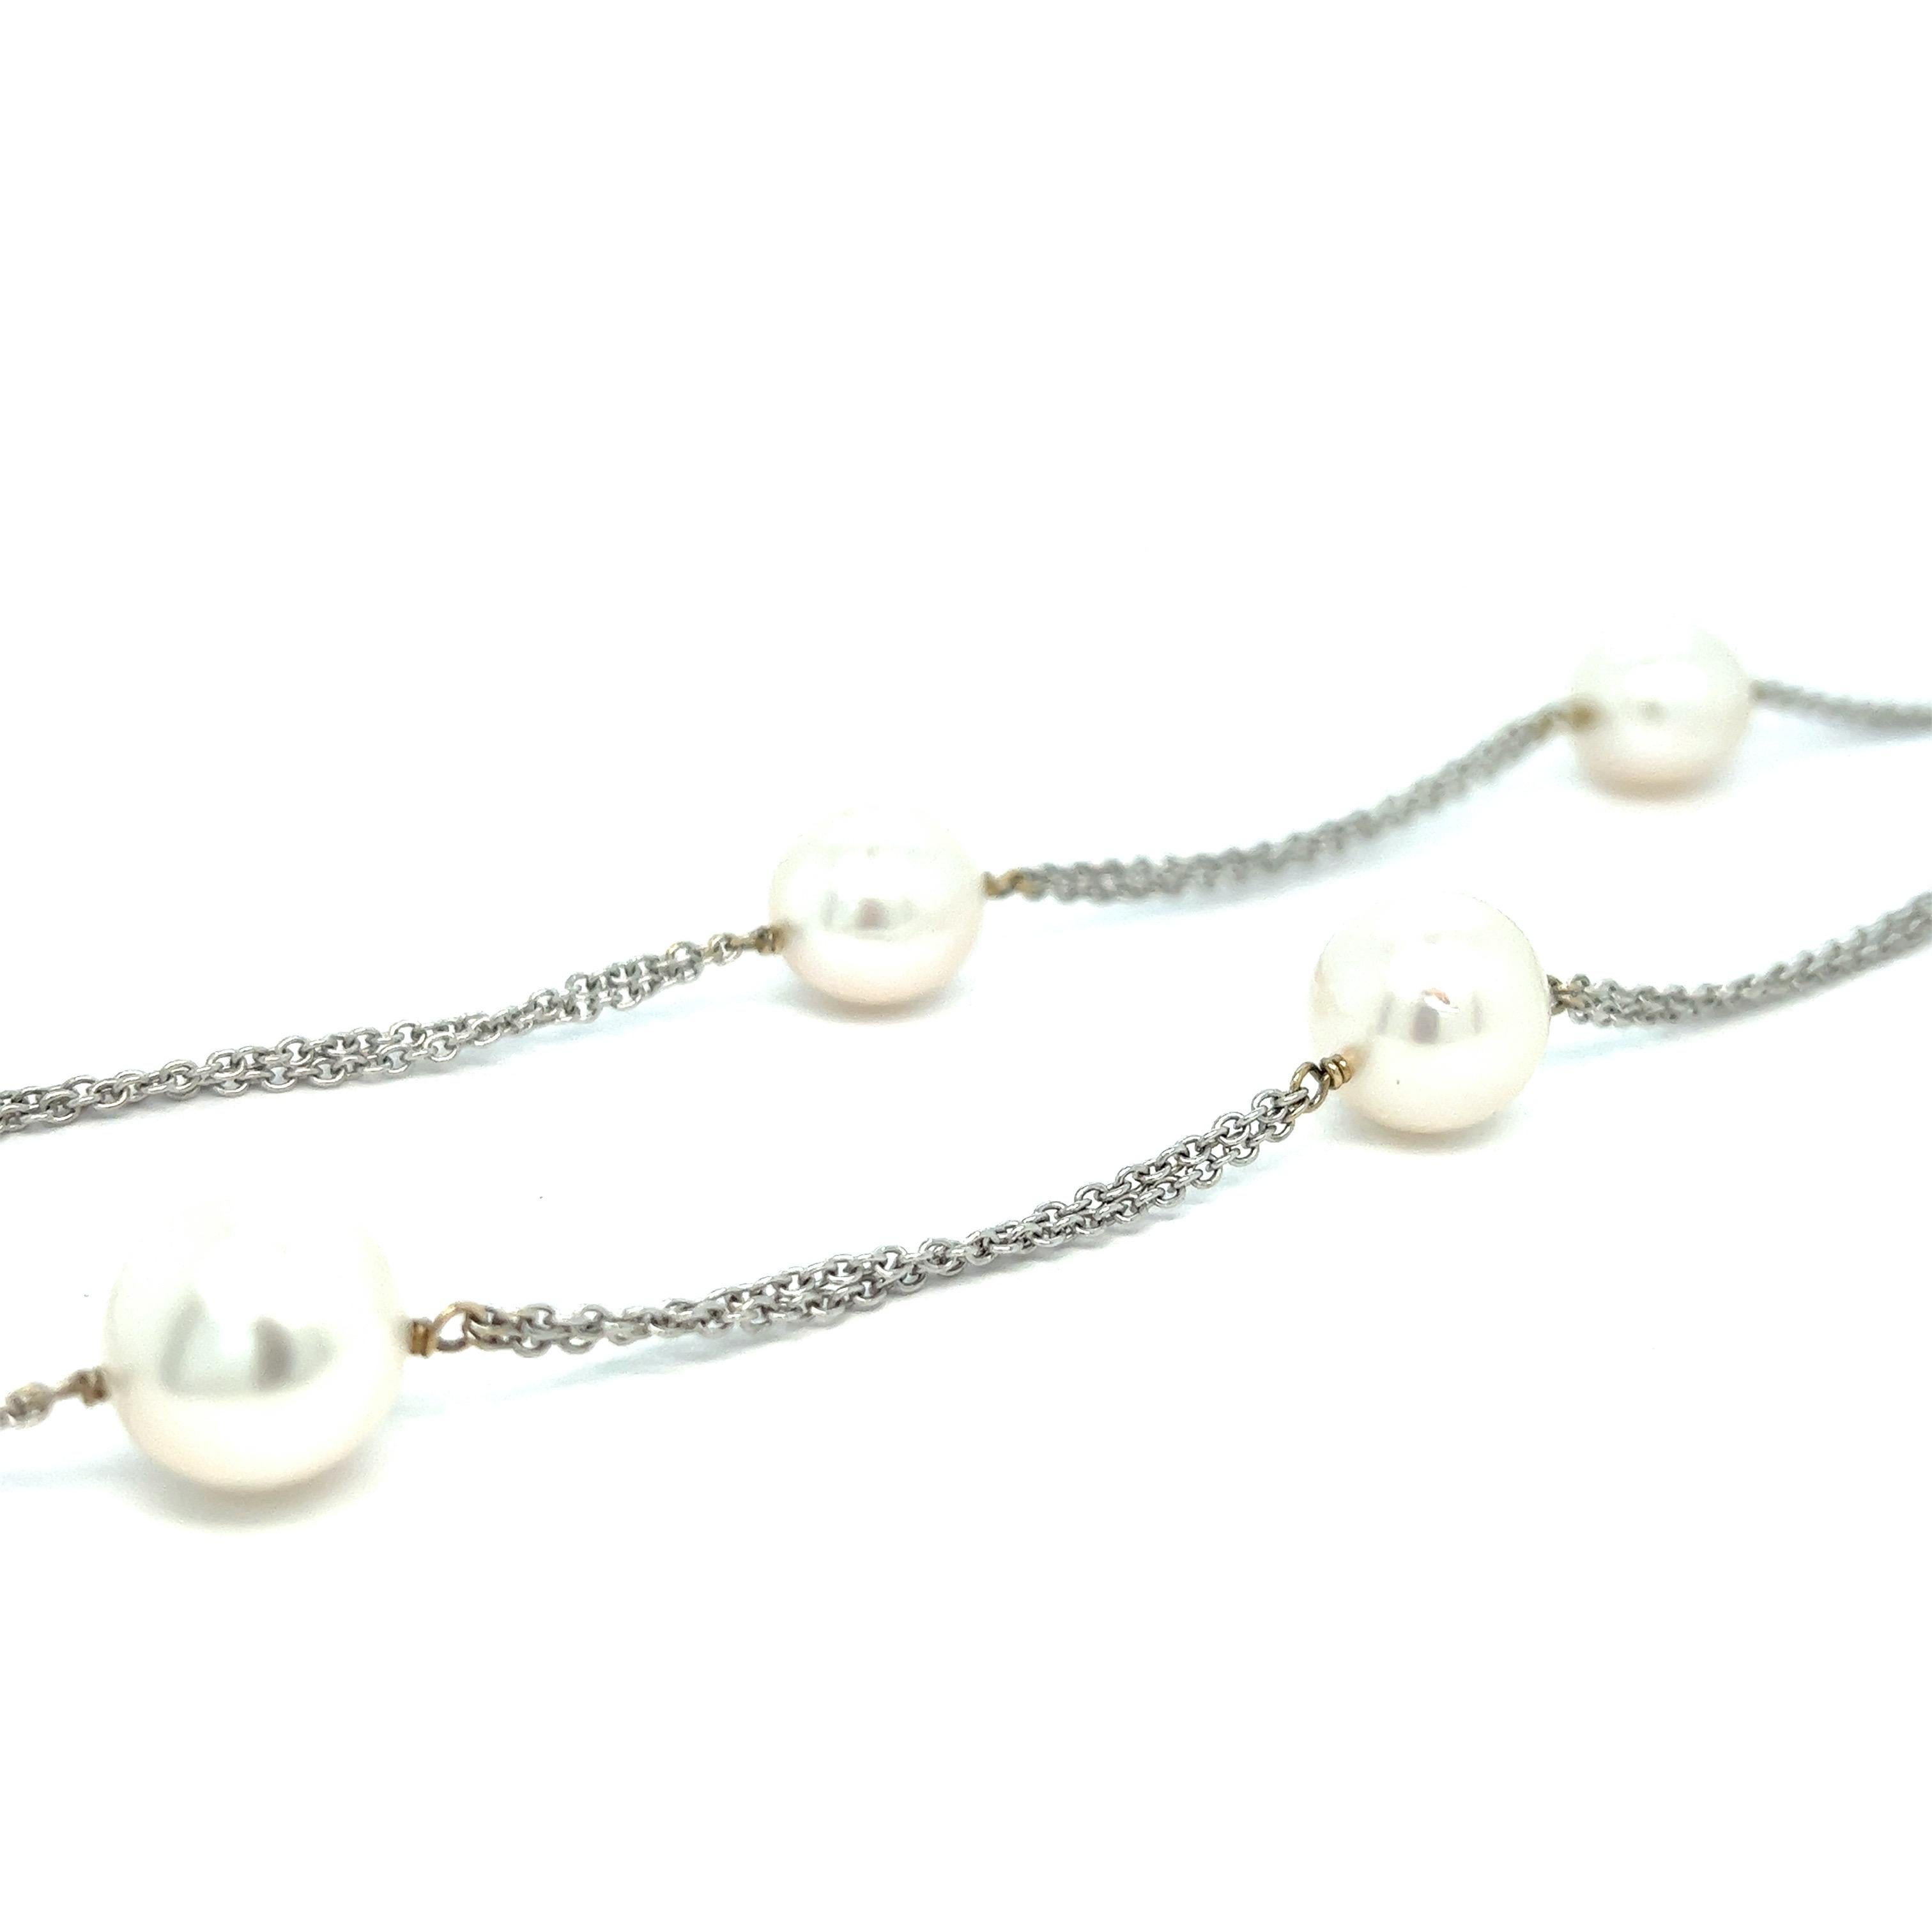 Collier en or blanc avec perles de mer du Sud

Très belles sept perles des mers du Sud (épaisseur moyenne de 12 mm), or blanc 18 carats ; marquées 750

Taille : longueur 18.5 pouces, peut aller jusqu'à 22 pouces
Poids total : 25,6 grammes